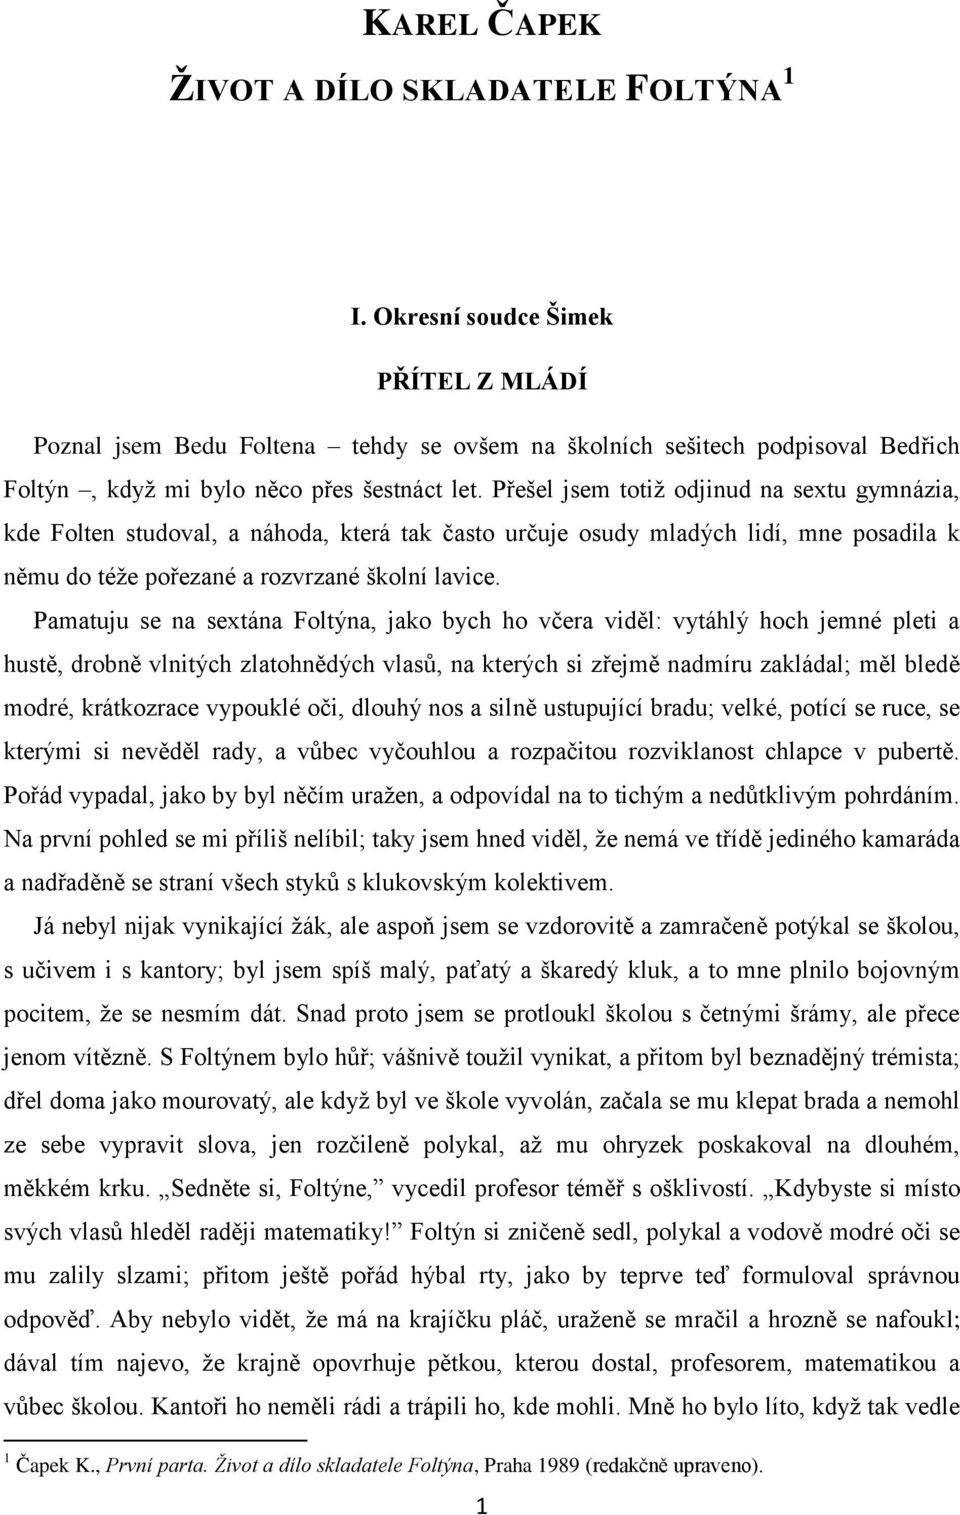 KAREL ČAPEK ŽIVOT A DÍLO SKLADATELE FOLTÝNA 1 - PDF Free Download